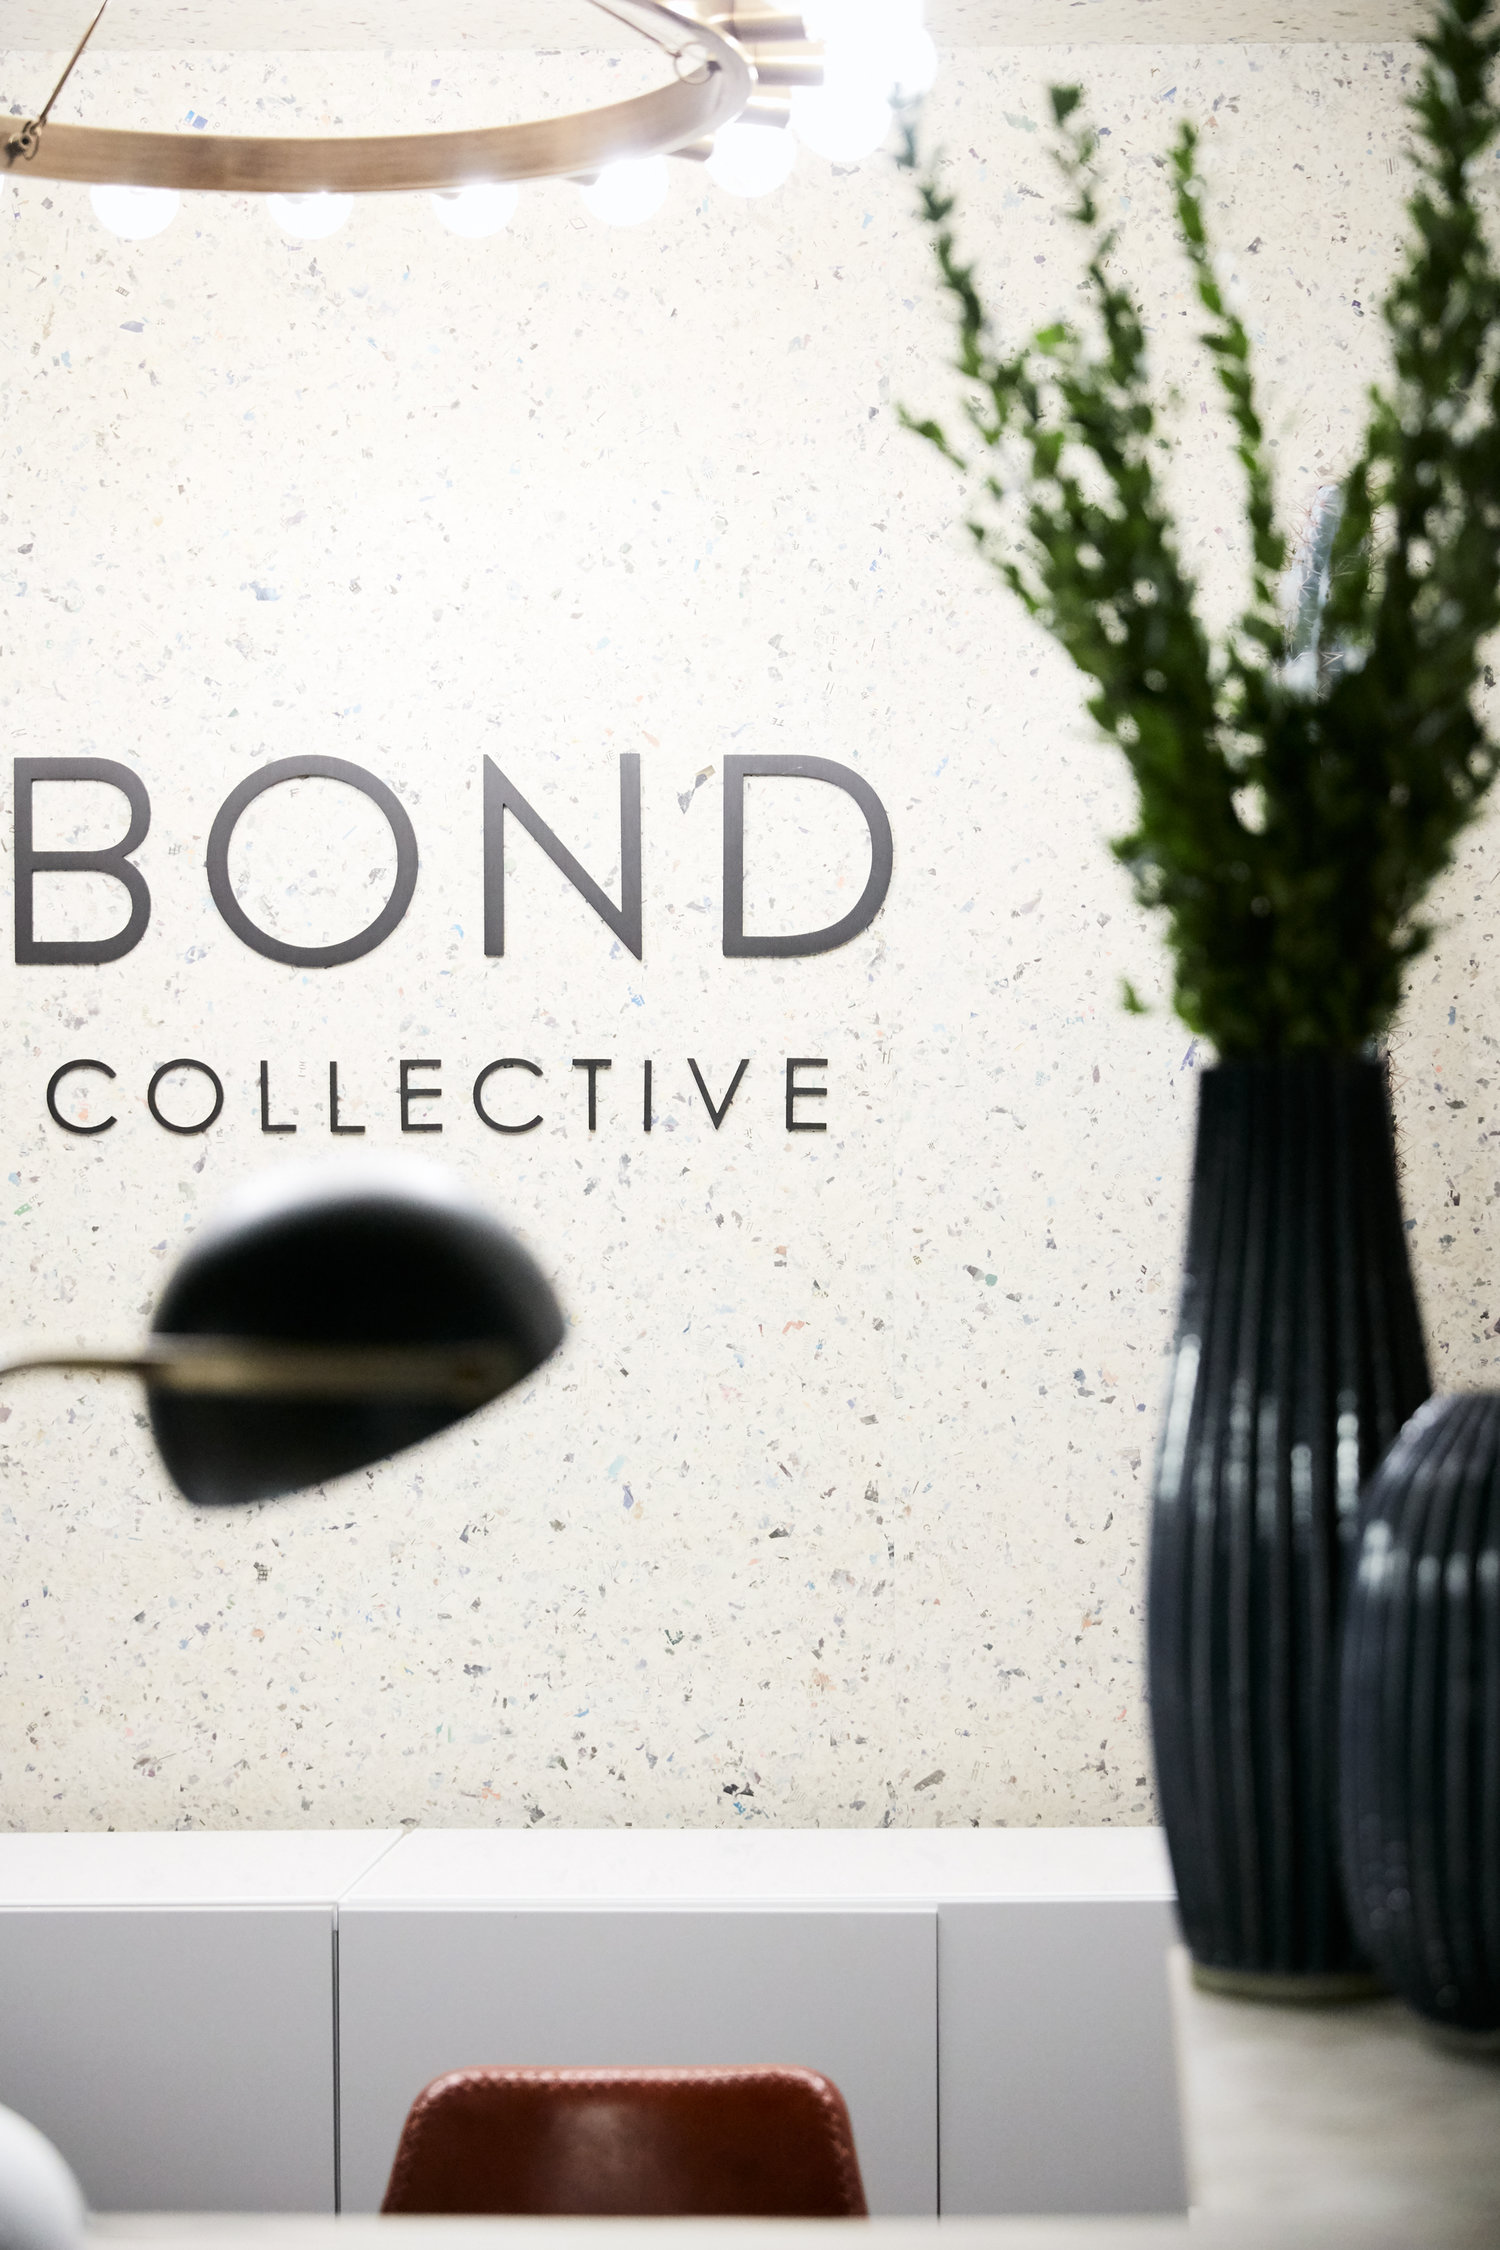 Bond Collective logo next to a plant